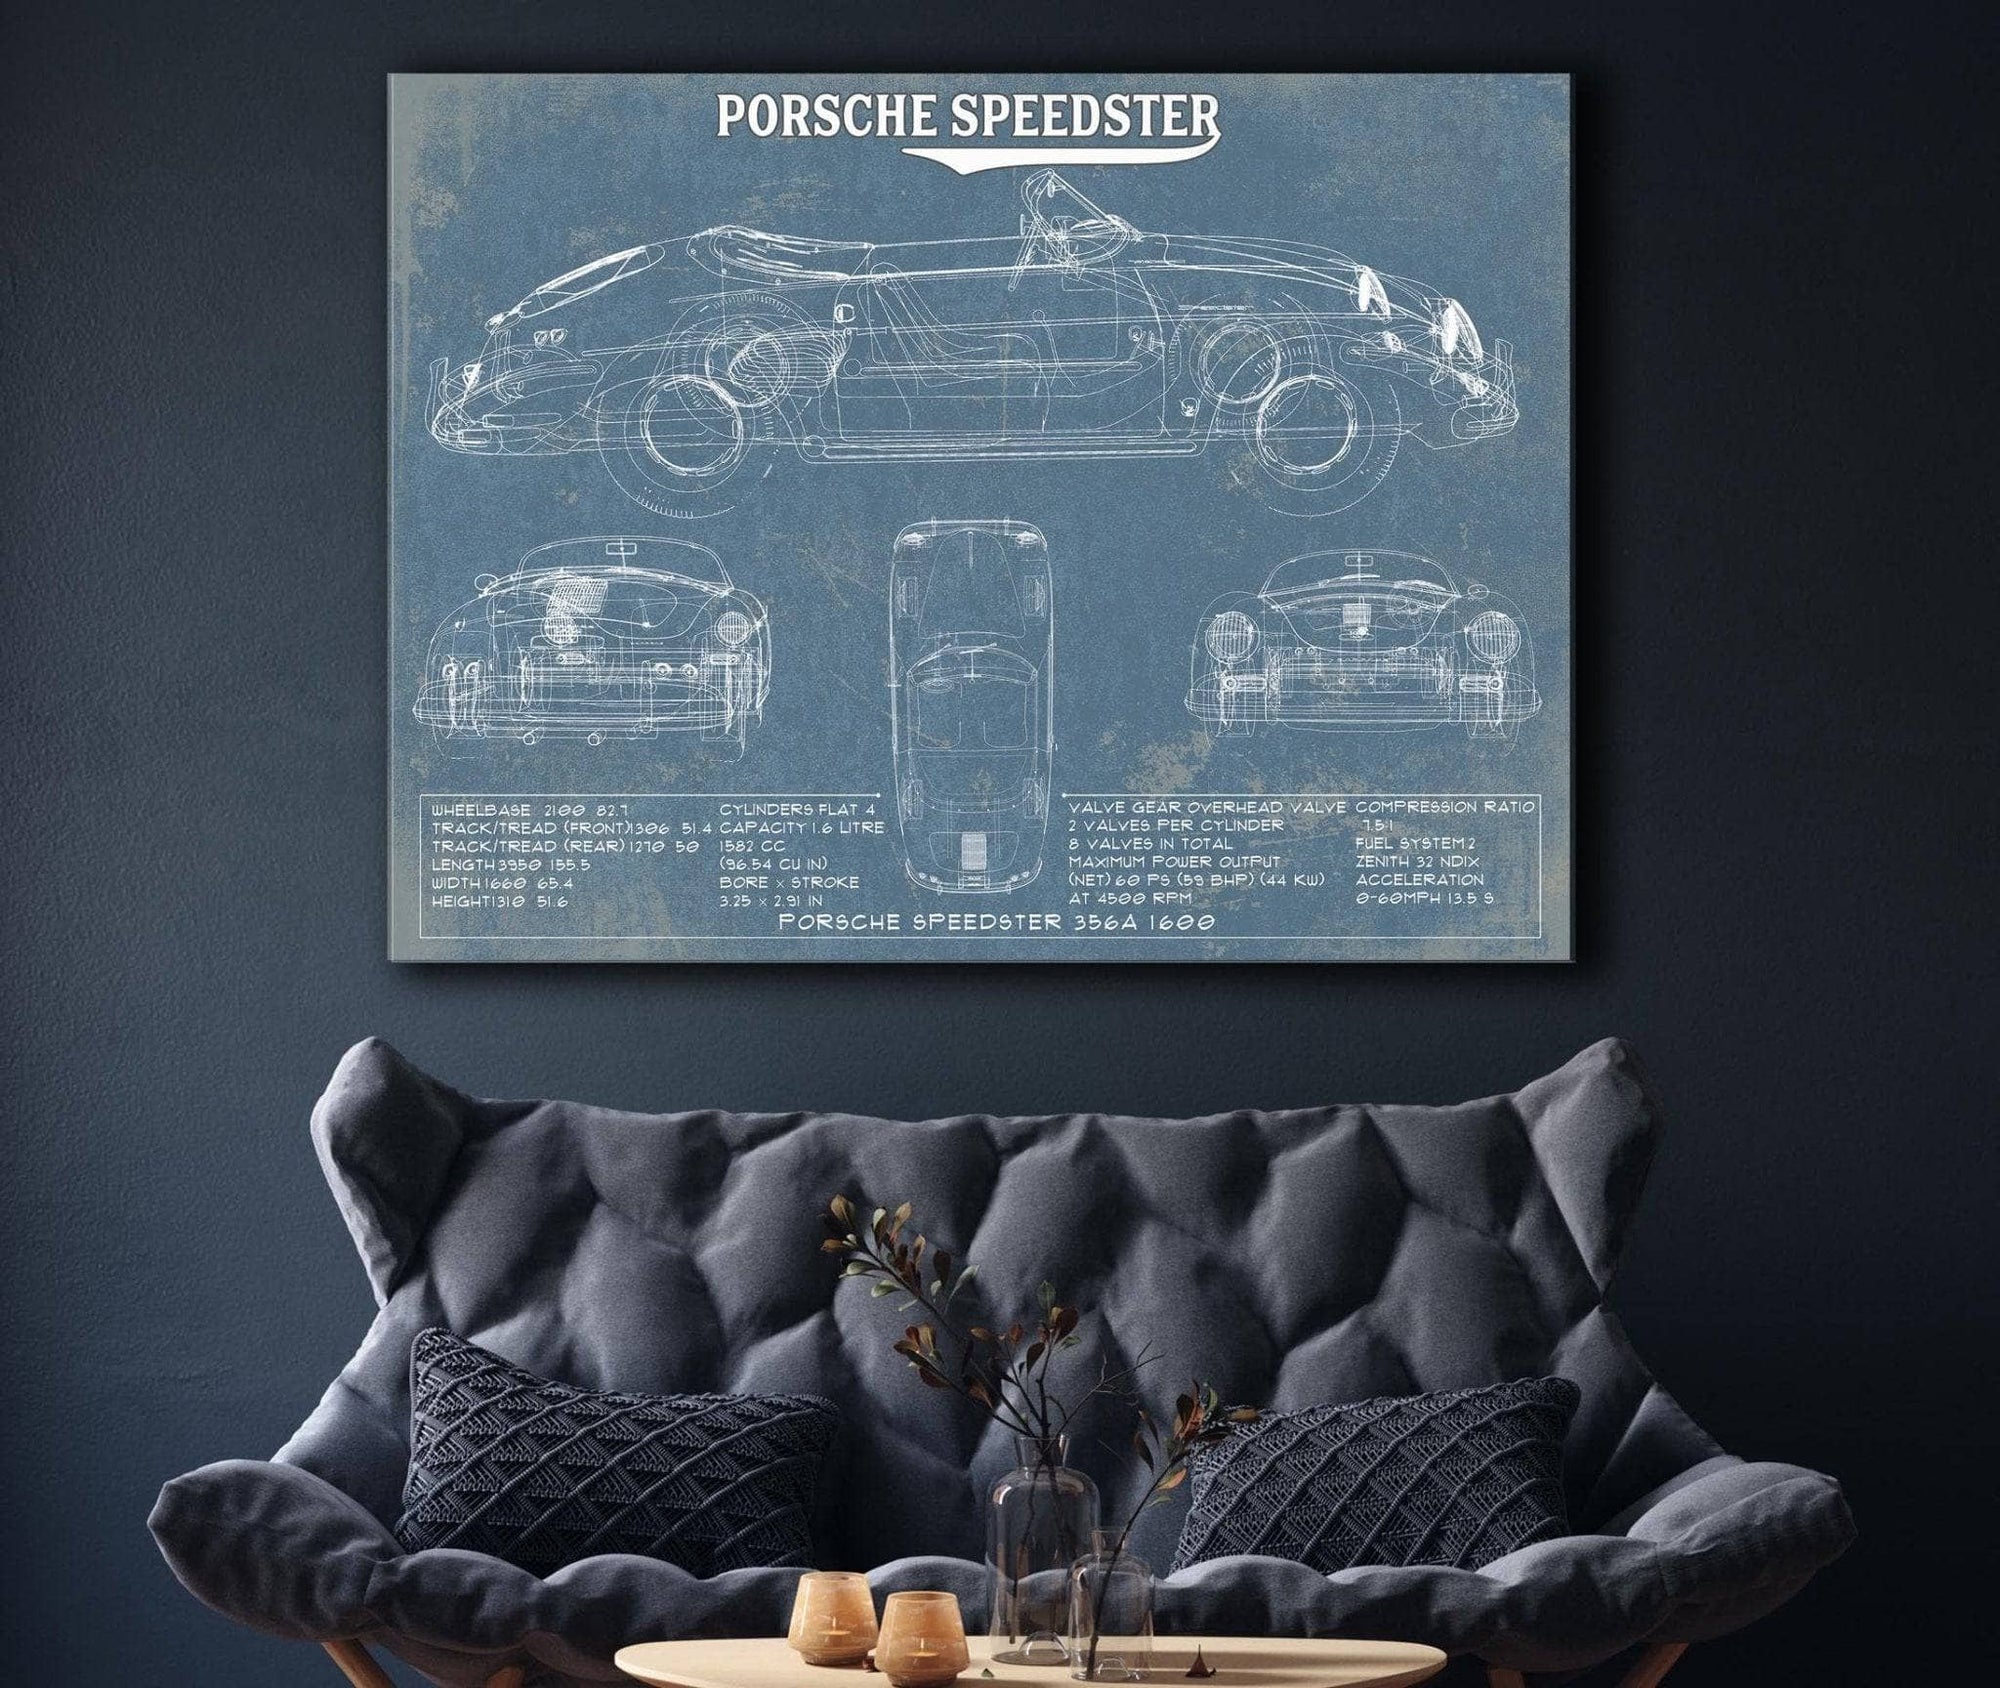 Cutler West Porsche Collection Porsche Speedster 356A 1600 Vintage Auto Print